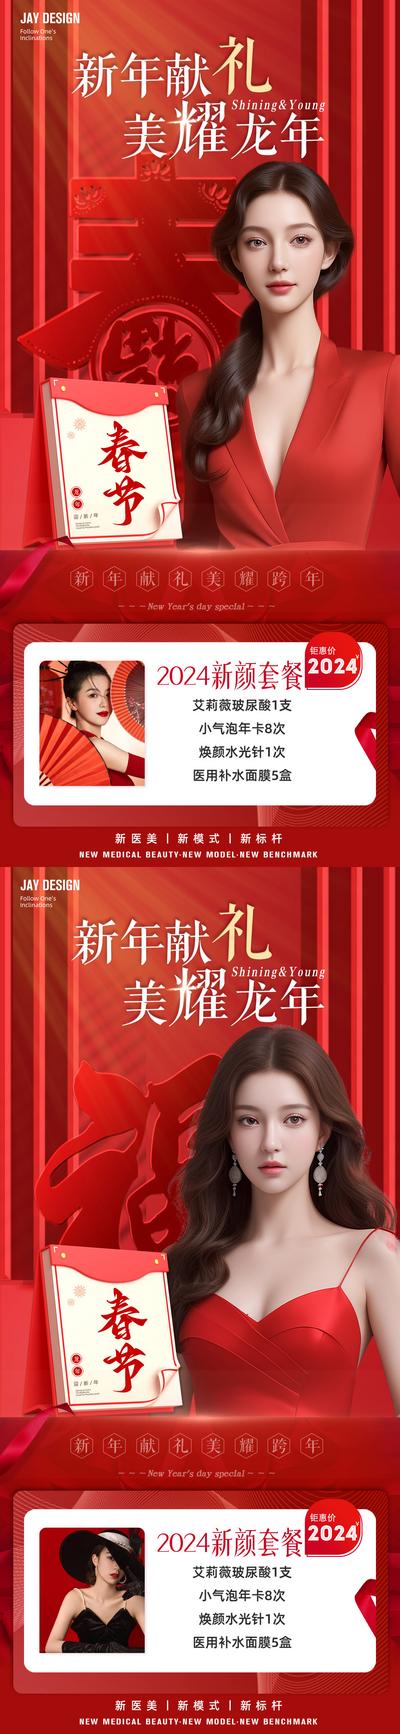 南门网 广告 海报 医美 人物 促销 中式 红金 新年 龙年 春节 卡项 AI女 项目 整形 喜庆 2024